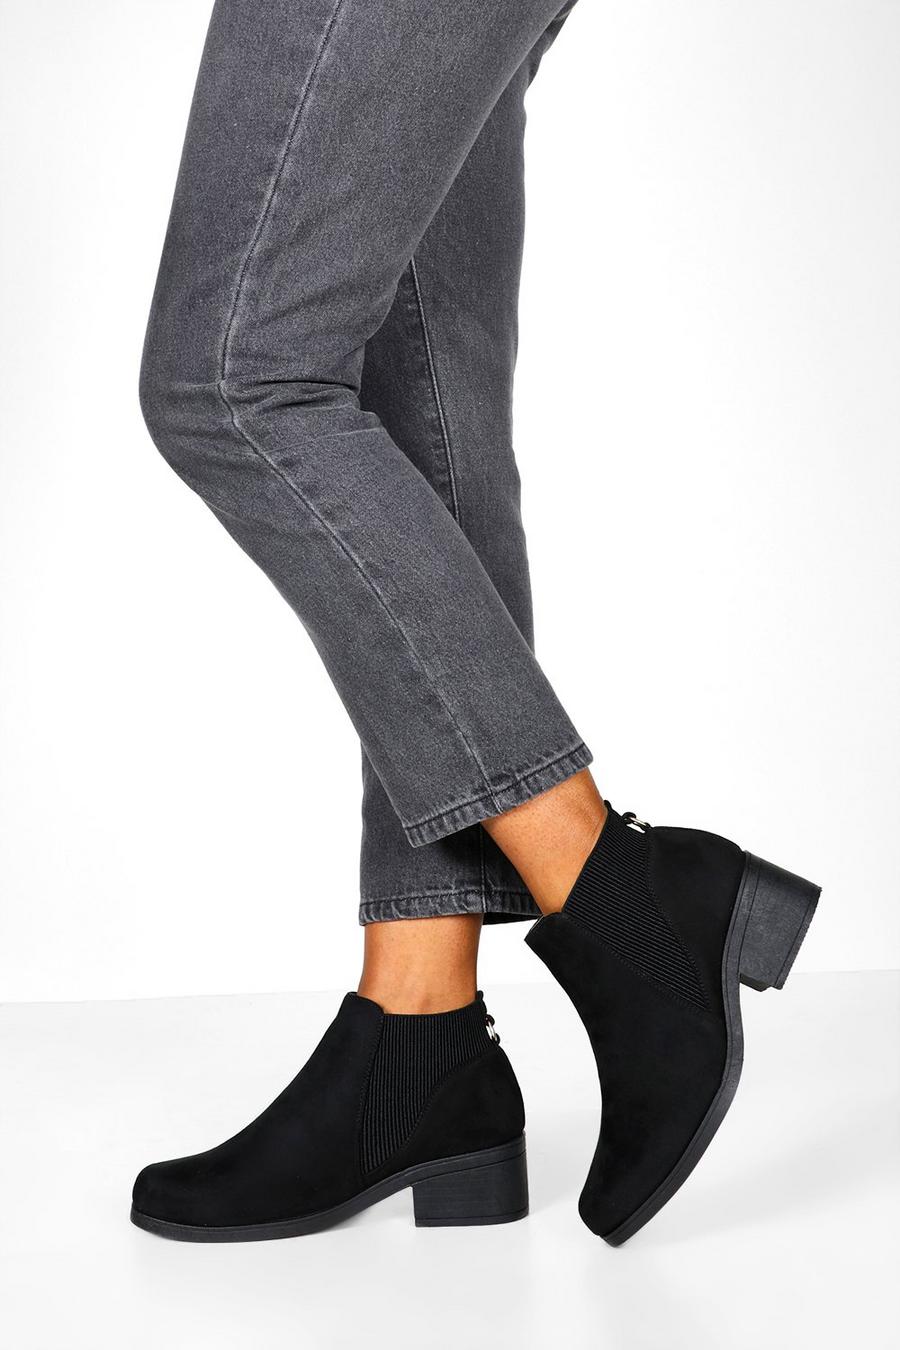 Chelsea-Stiefel mit tiefem Blockabsatz, Schwarz black